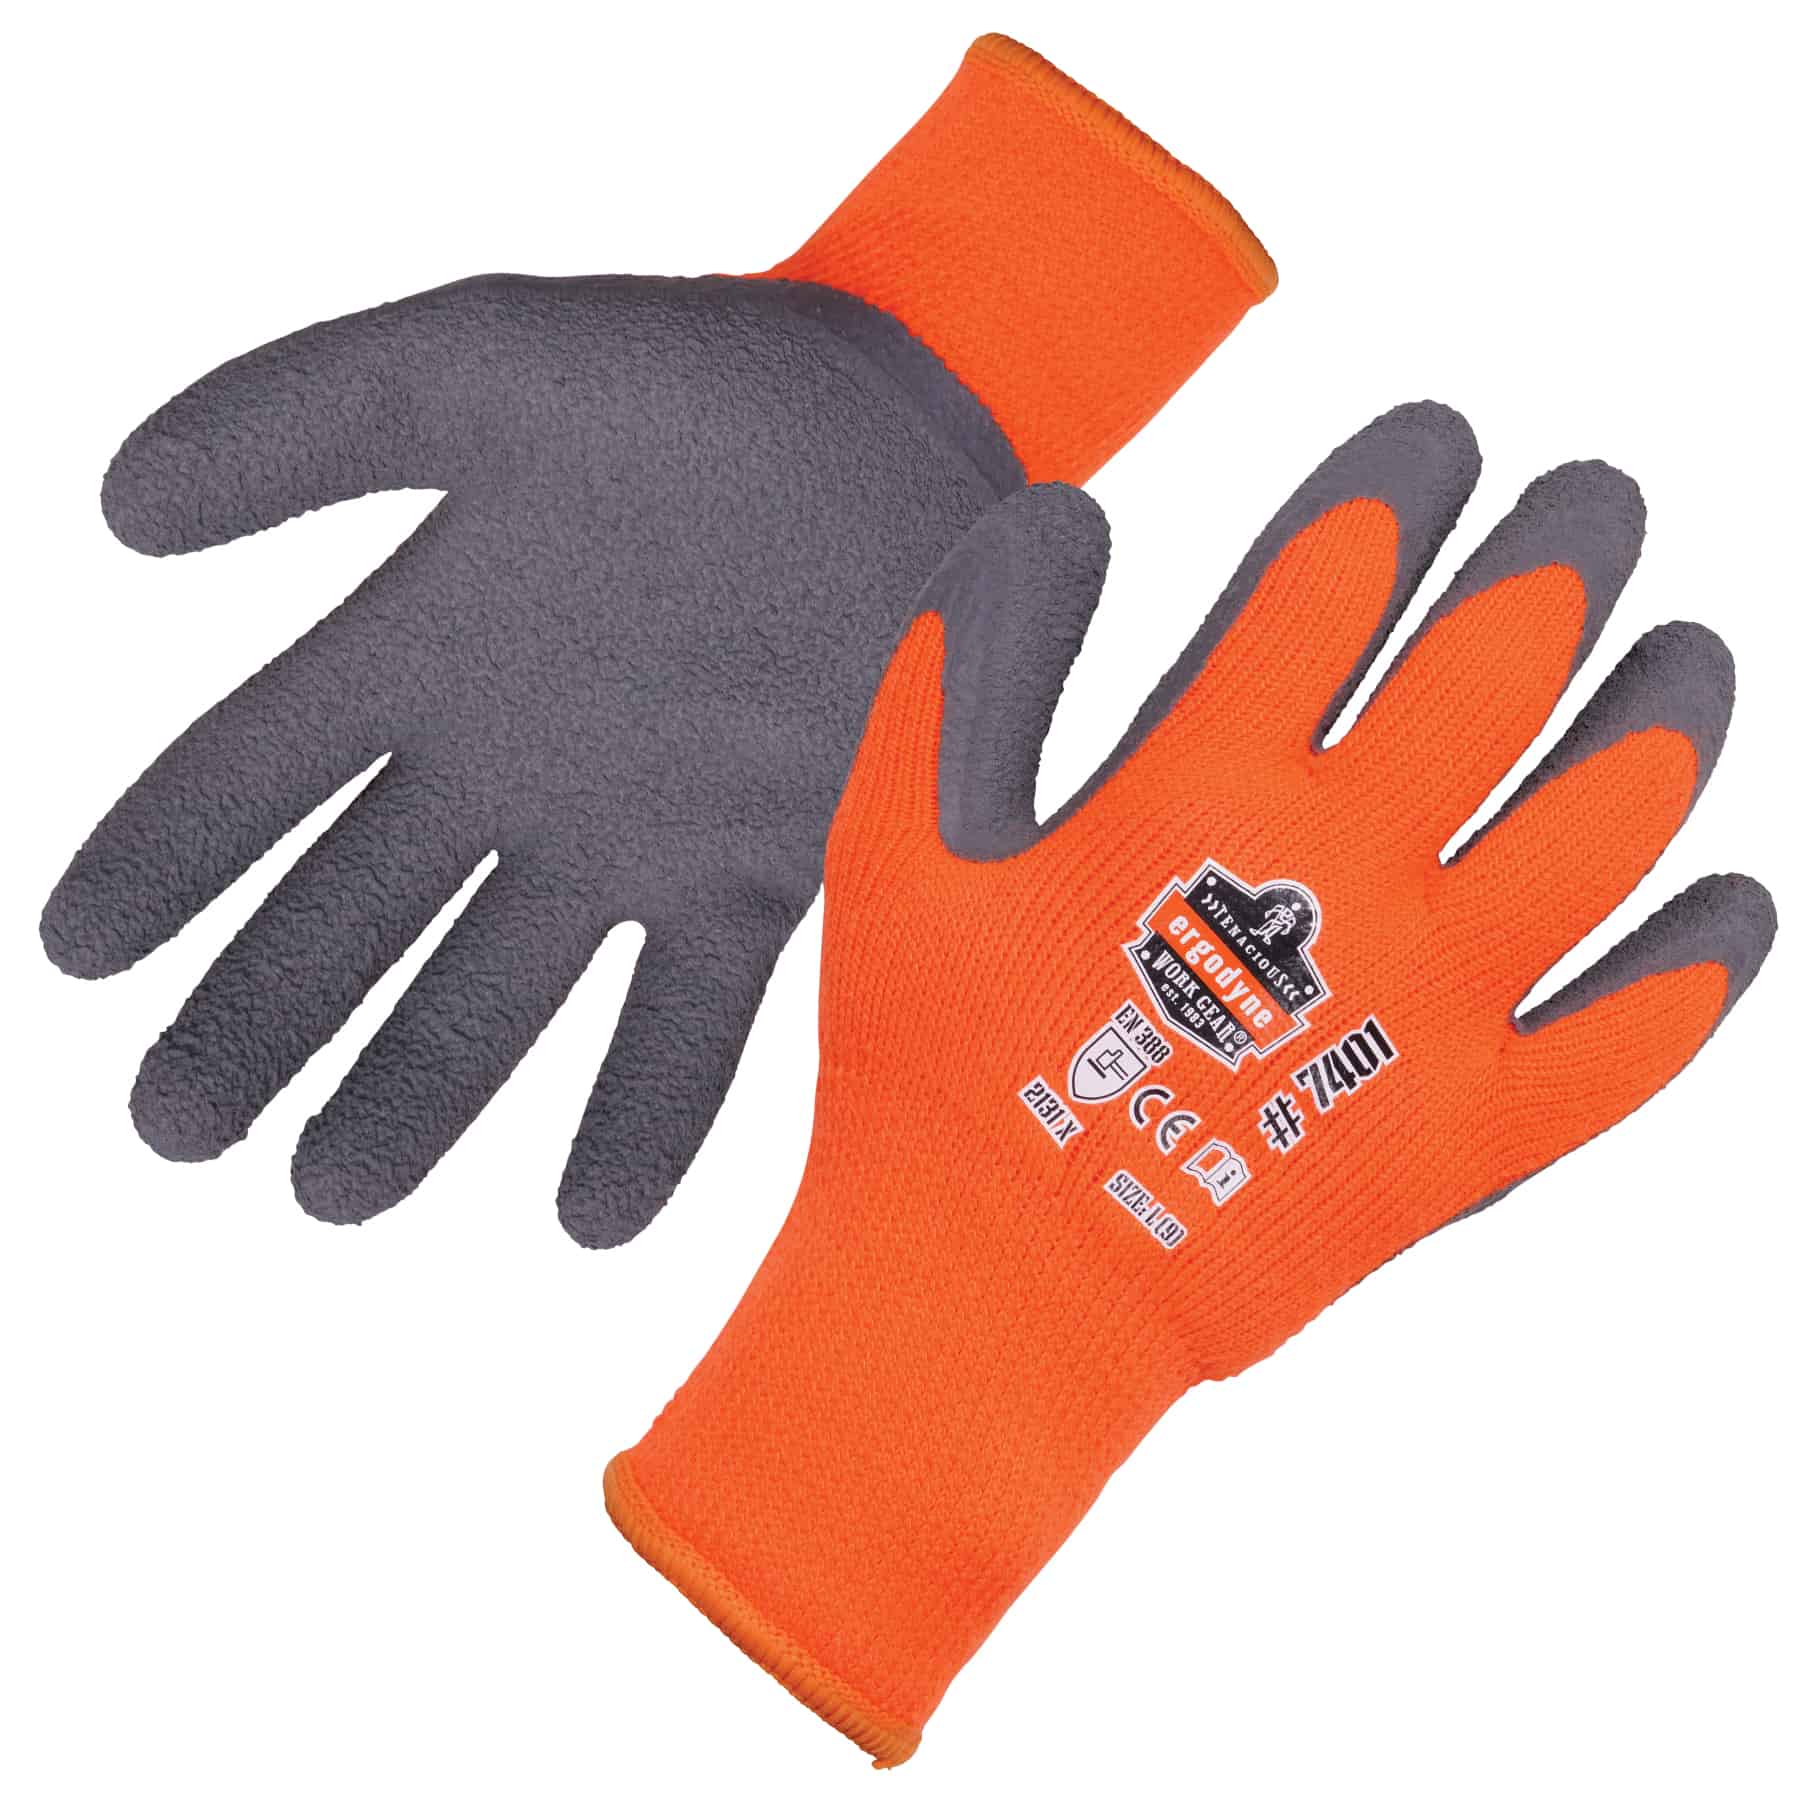 10 Pairs Waterproof Flex Grip Latex Glove Garden Builder Work Safety Gloves A174 